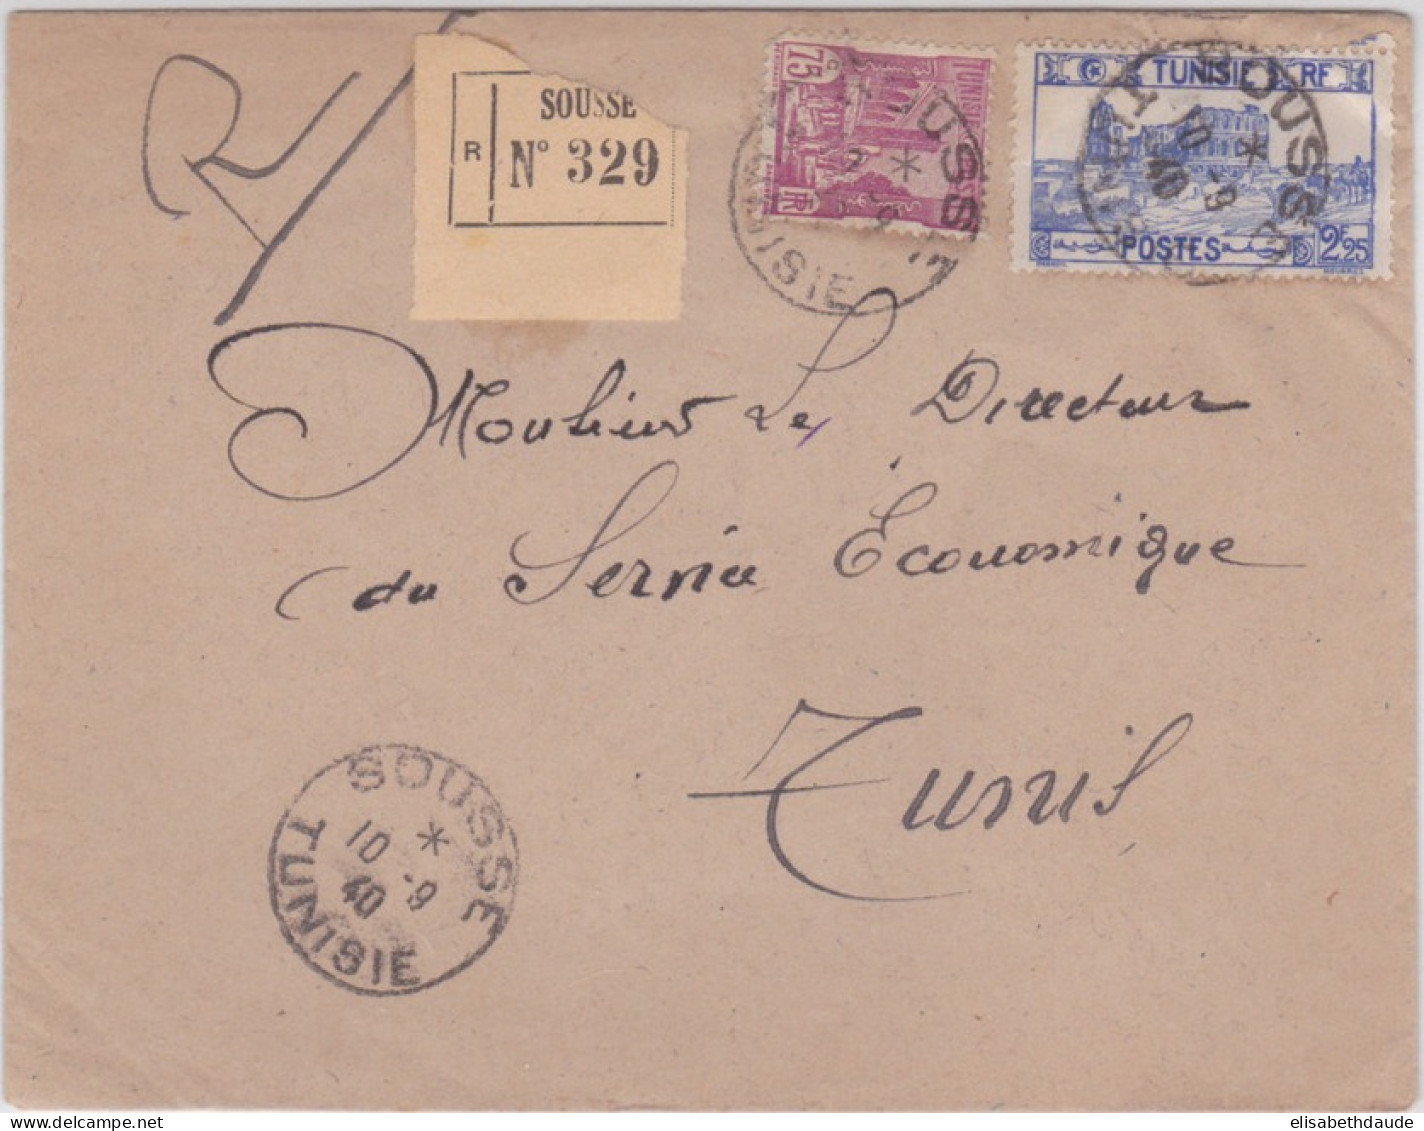 TUNISIE - 1940 - ENVELOPPE RECOMMANDEE De SOUSSE Pour TUNIS - Lettres & Documents